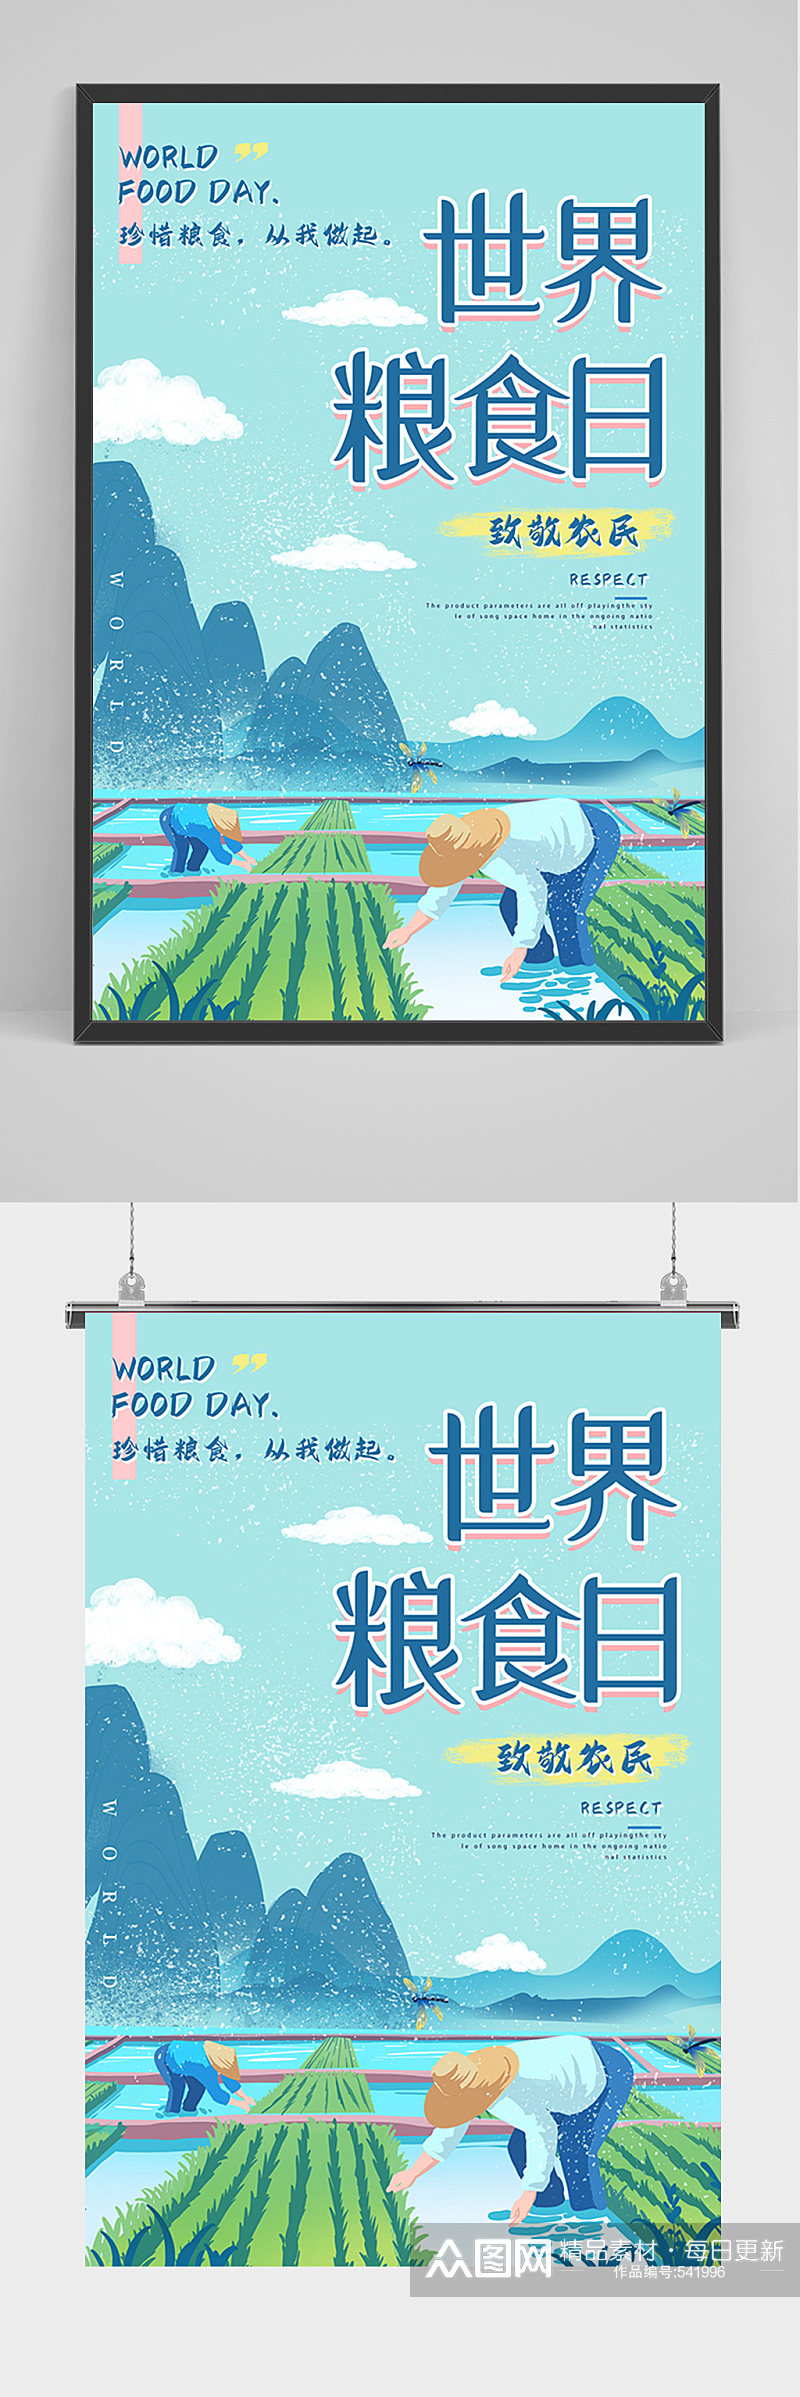 蓝色手绘世界粮食日海报素材